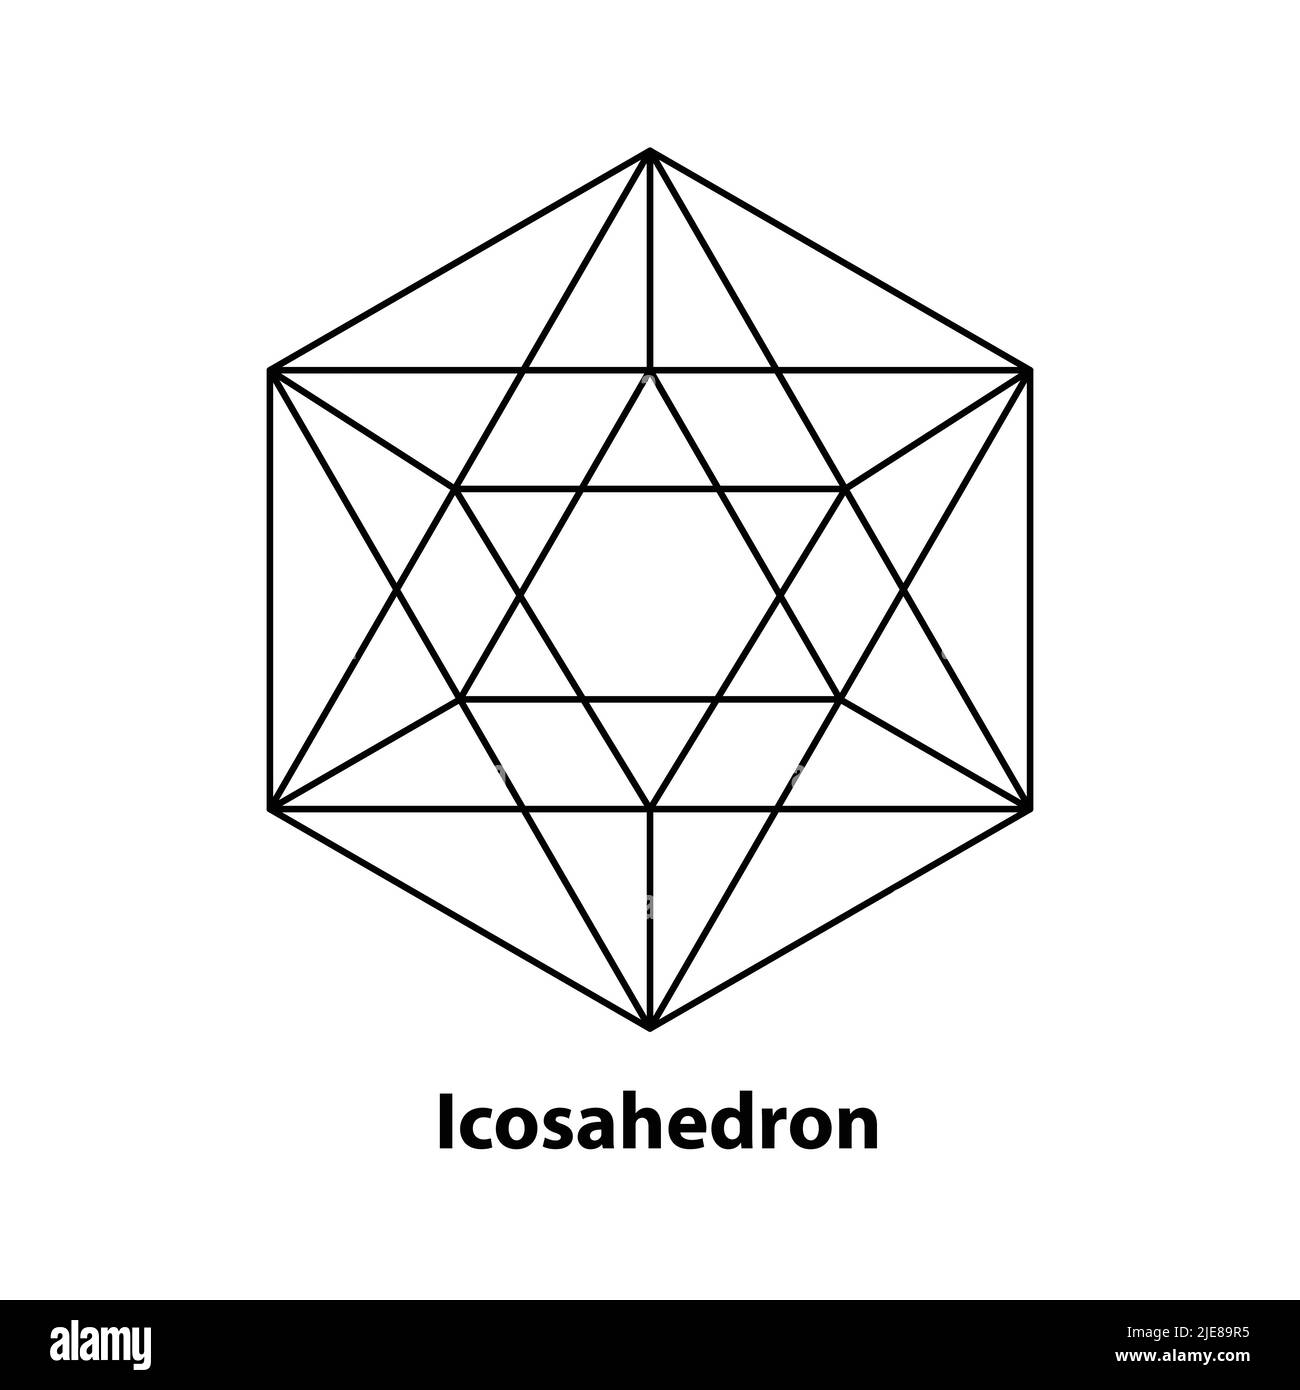 Disegno a linee di icosahedron, geometria sacra, solido platonico, logo, illustrazione vettoriale Illustrazione Vettoriale